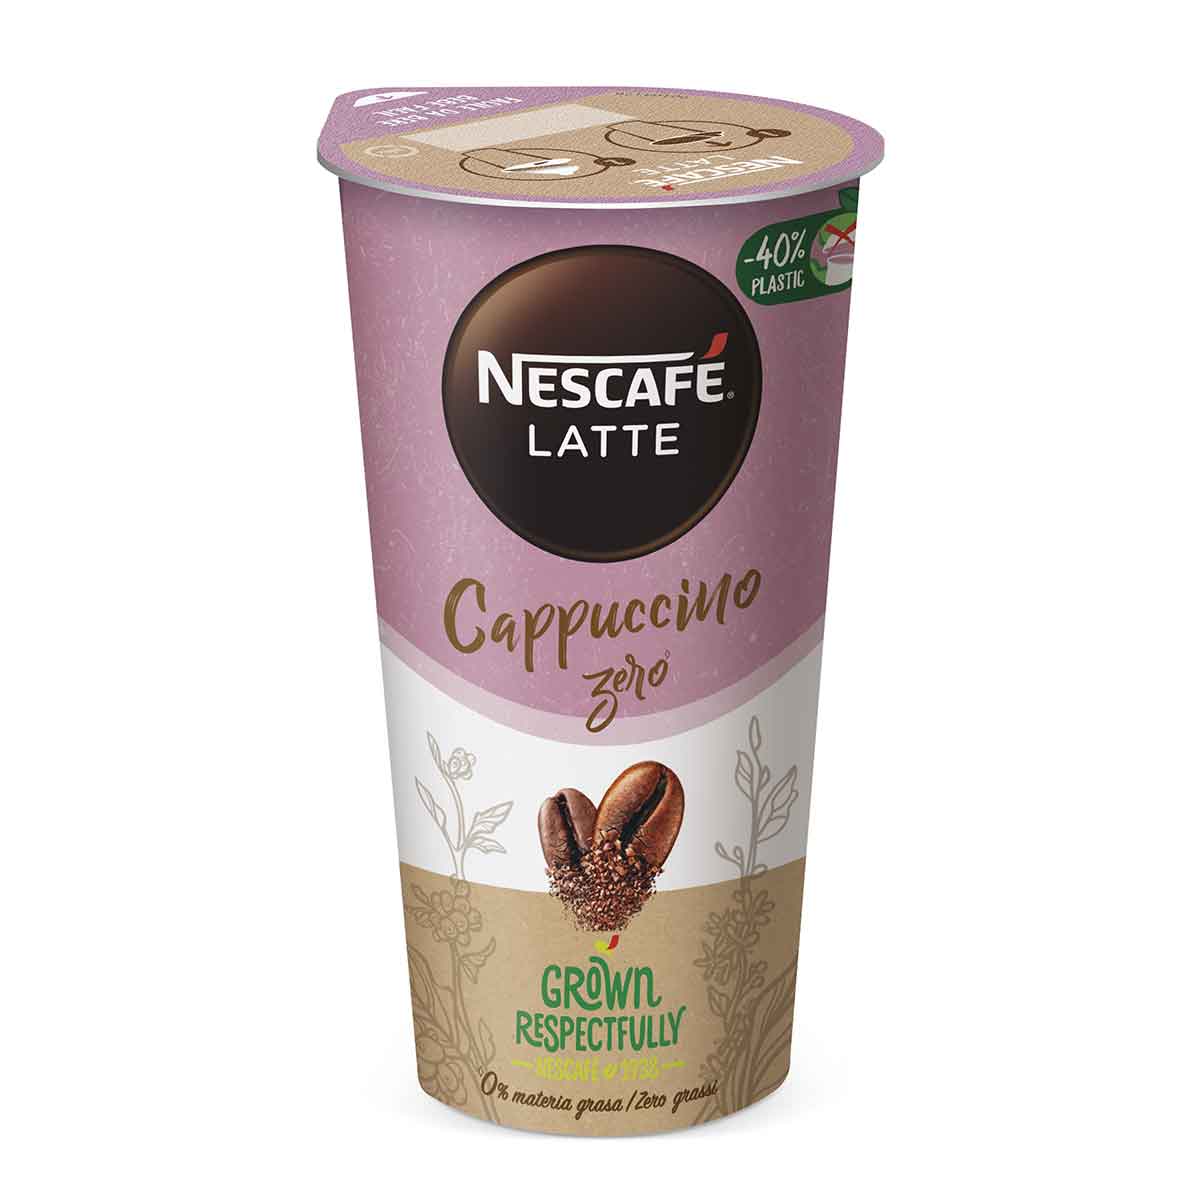 Nescafé Latte Cappuccino Zero